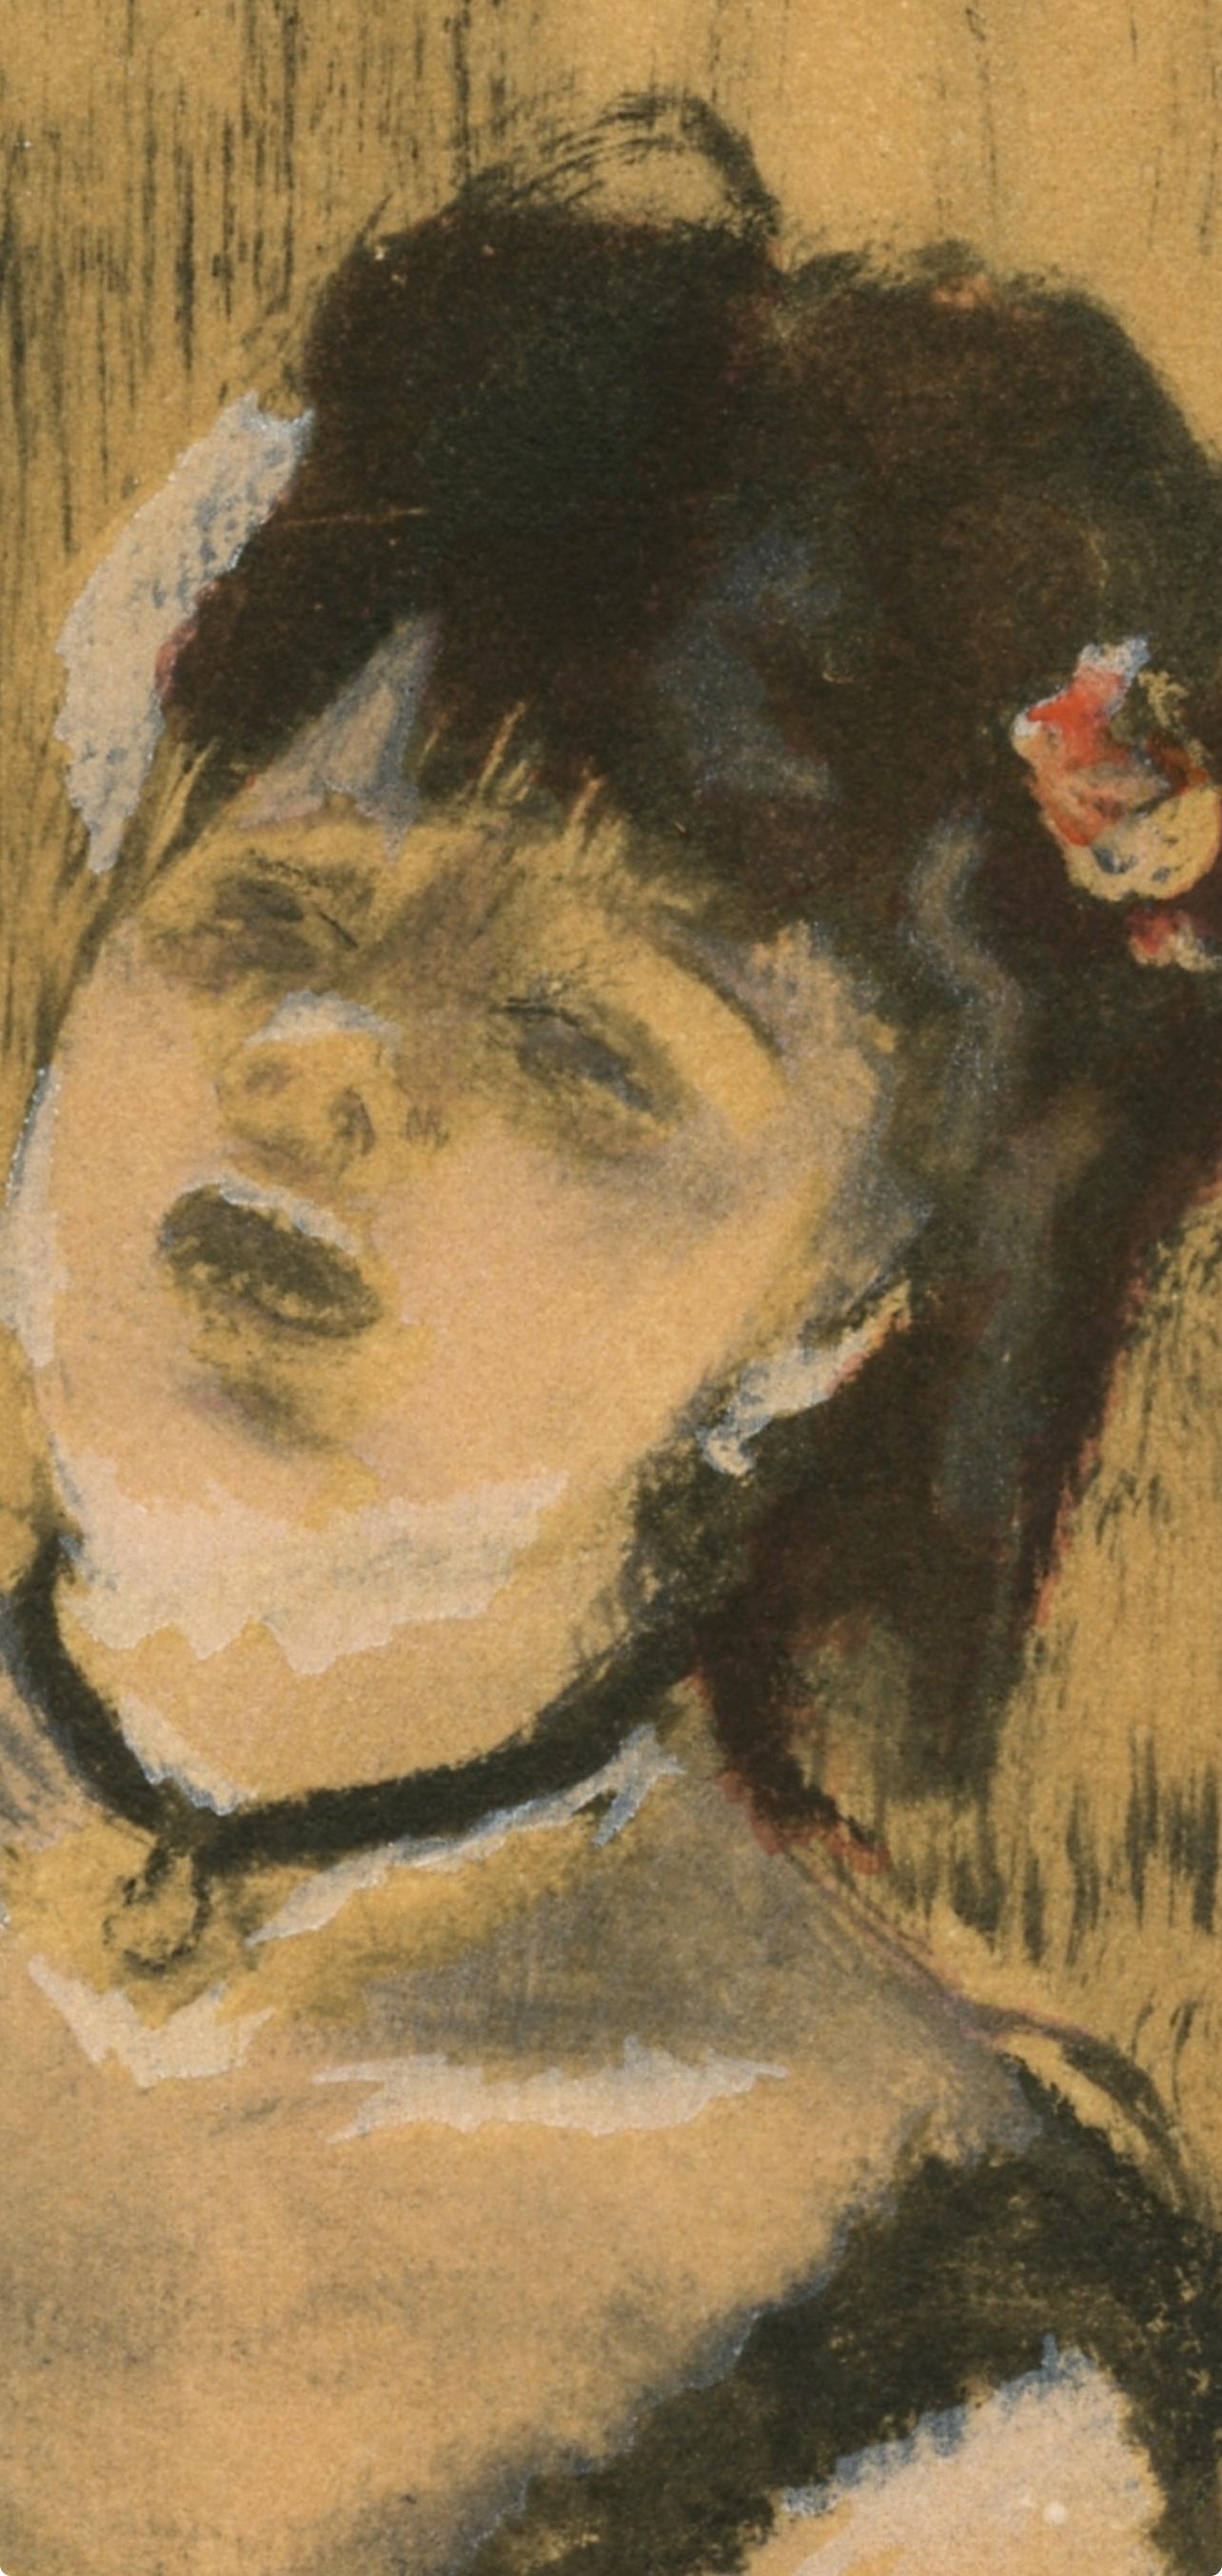 Degas, La Chanteuse du Cafe-Concert, Les Monotypes (after) - Print by Edgar Degas